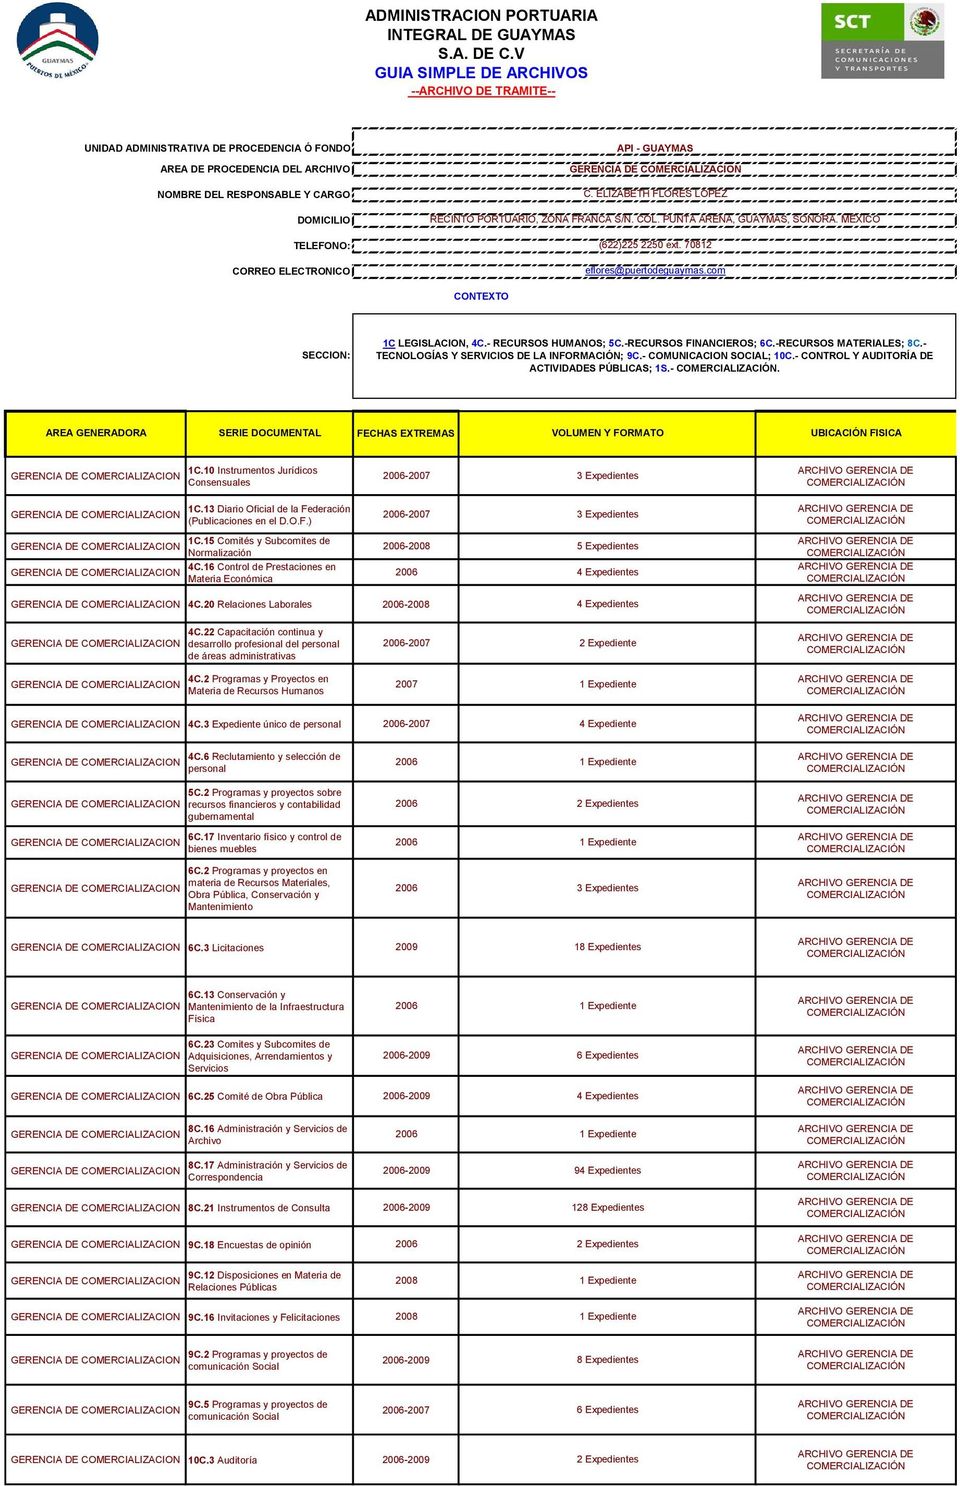 13 Diario Oficial de la Federación (Publicaciones en el D.O.F.) 1C.15 Comités y Subcomites de Normalización 4C.